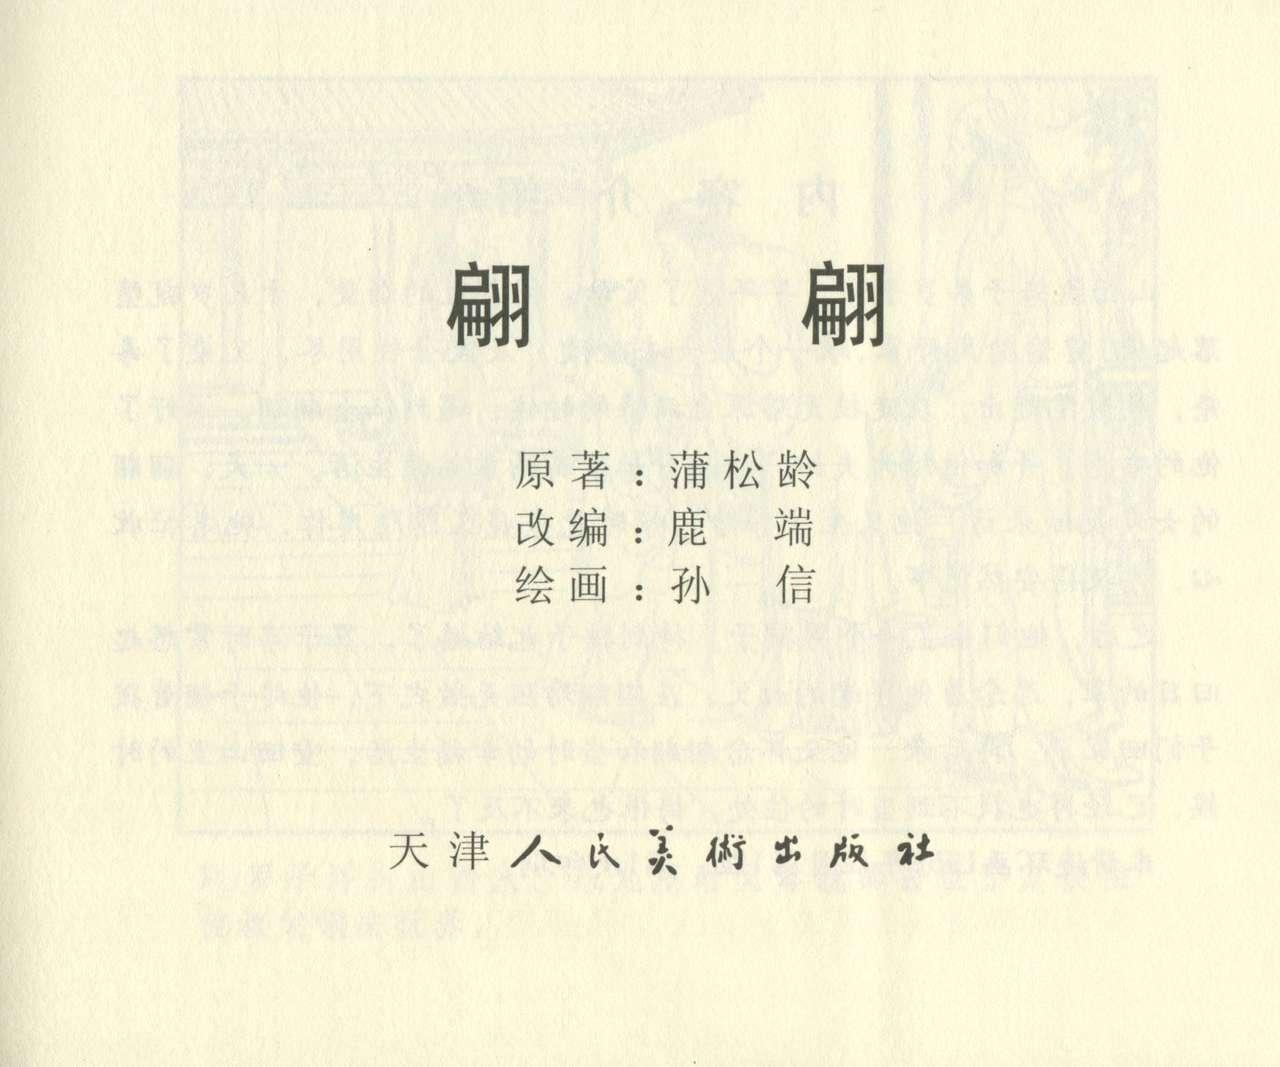 聊斋志异 张玮等绘 天津人民美术出版社 卷二十一 ~ 三十 615